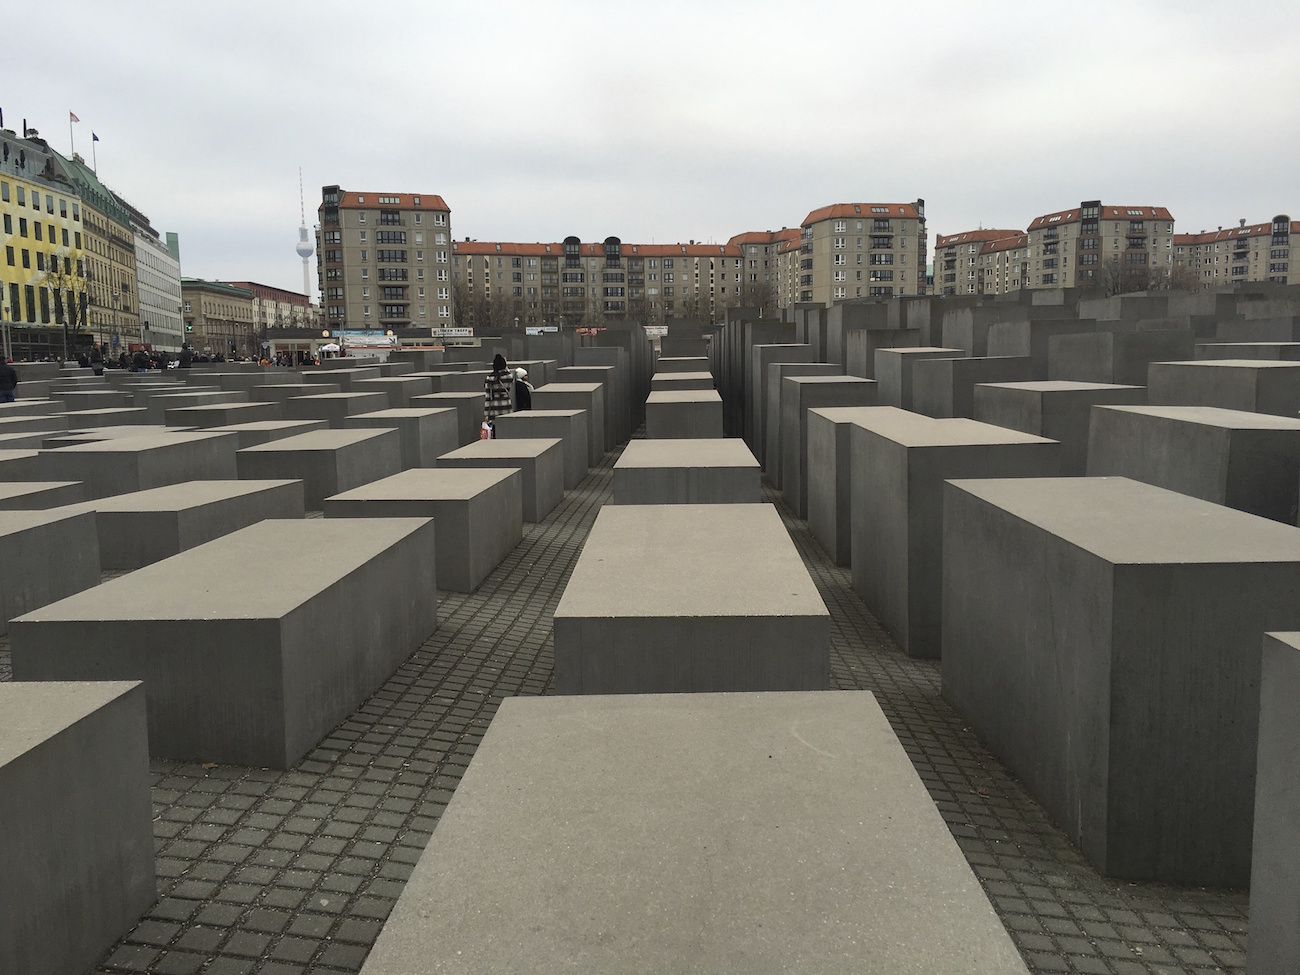 The holocaust memorial in Berlin.